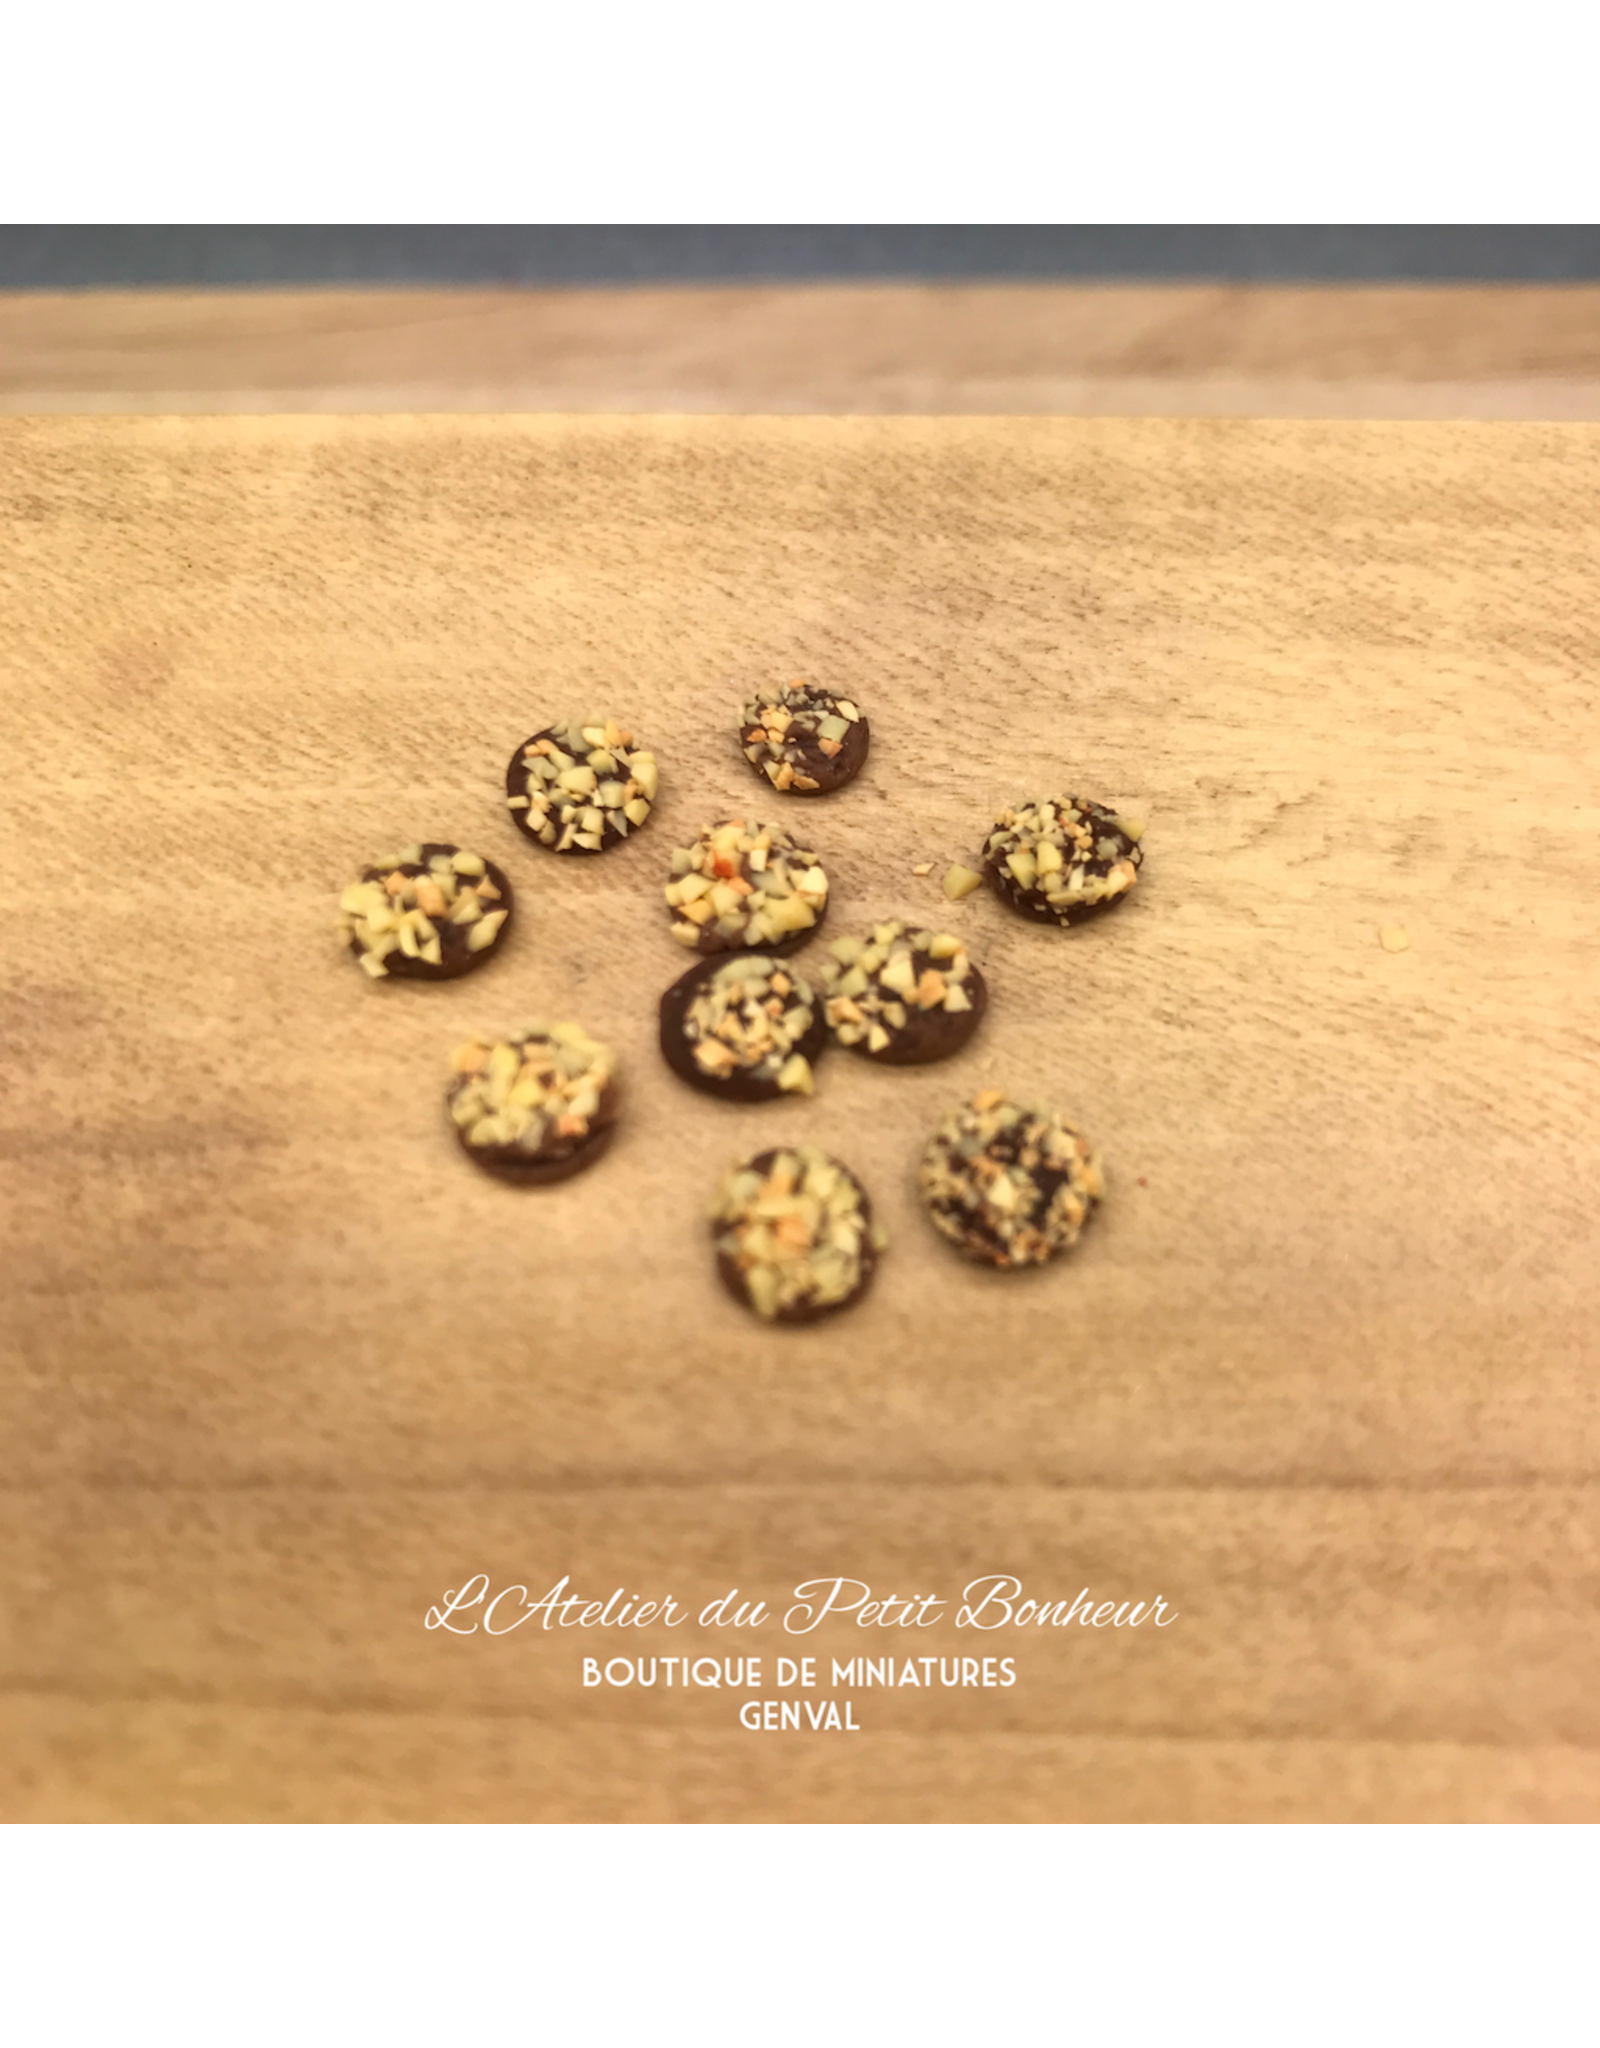 Cookies (10) miniatures 1:12